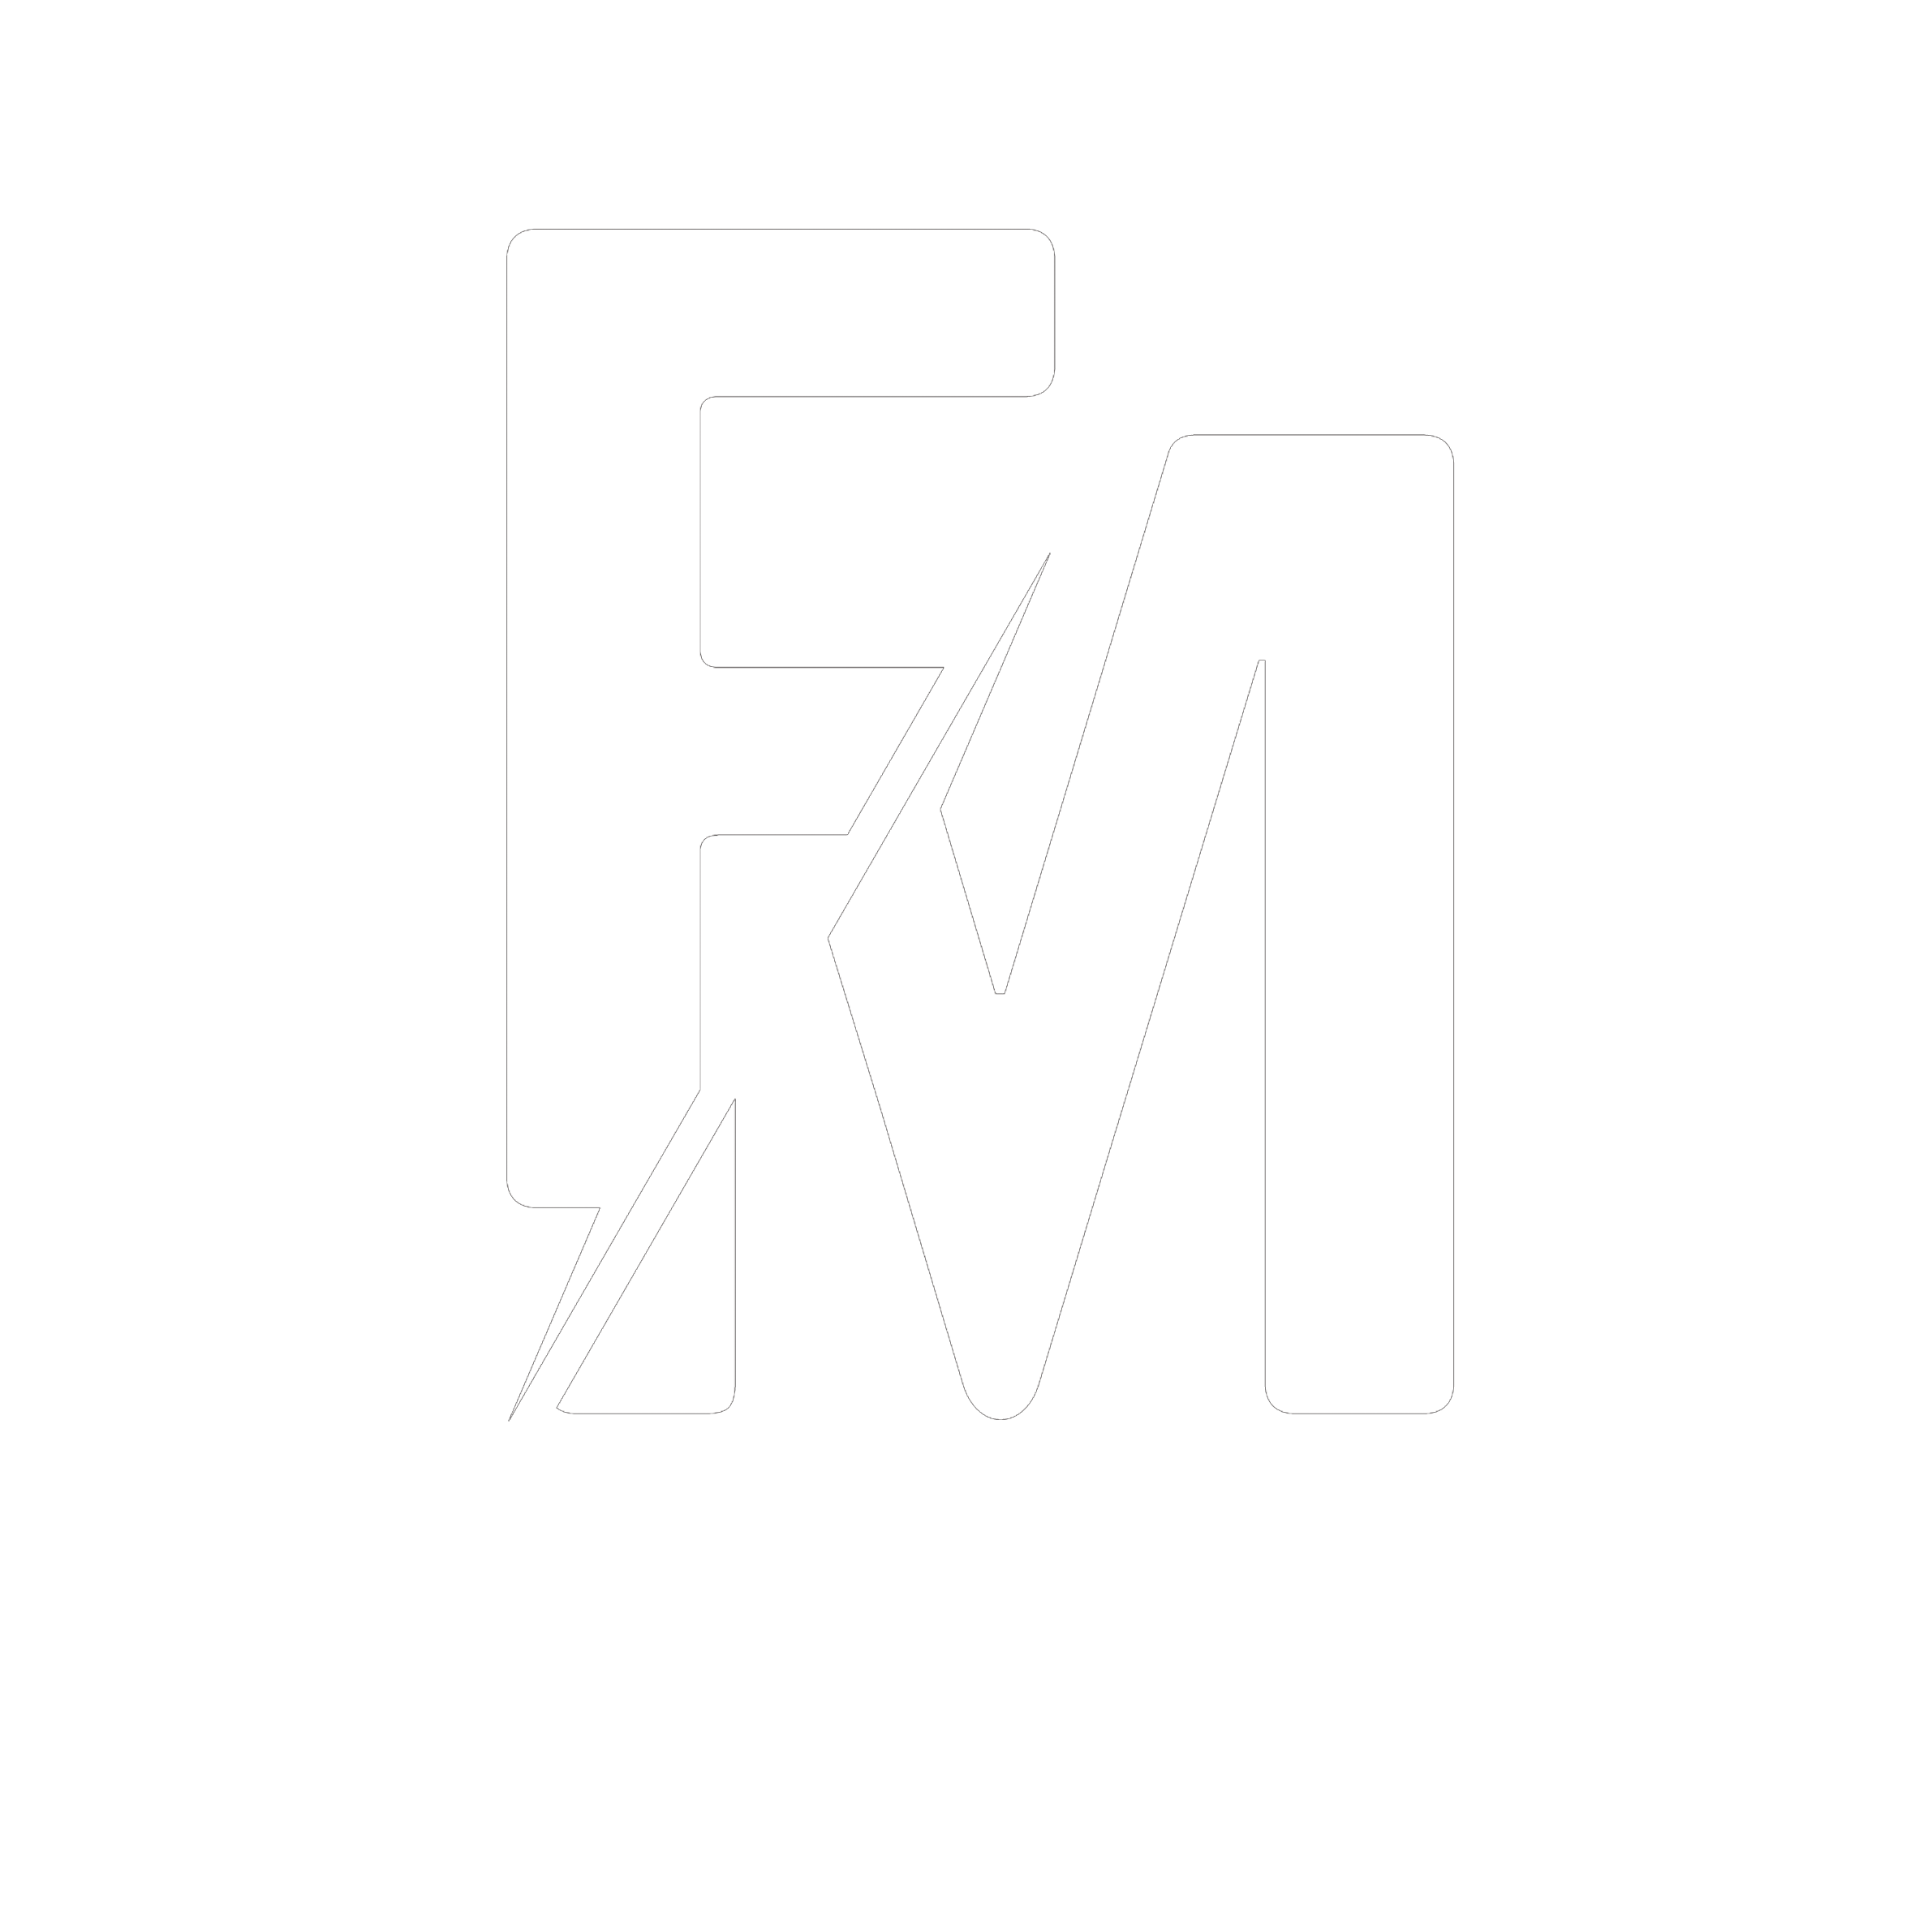 Fashion Mix International